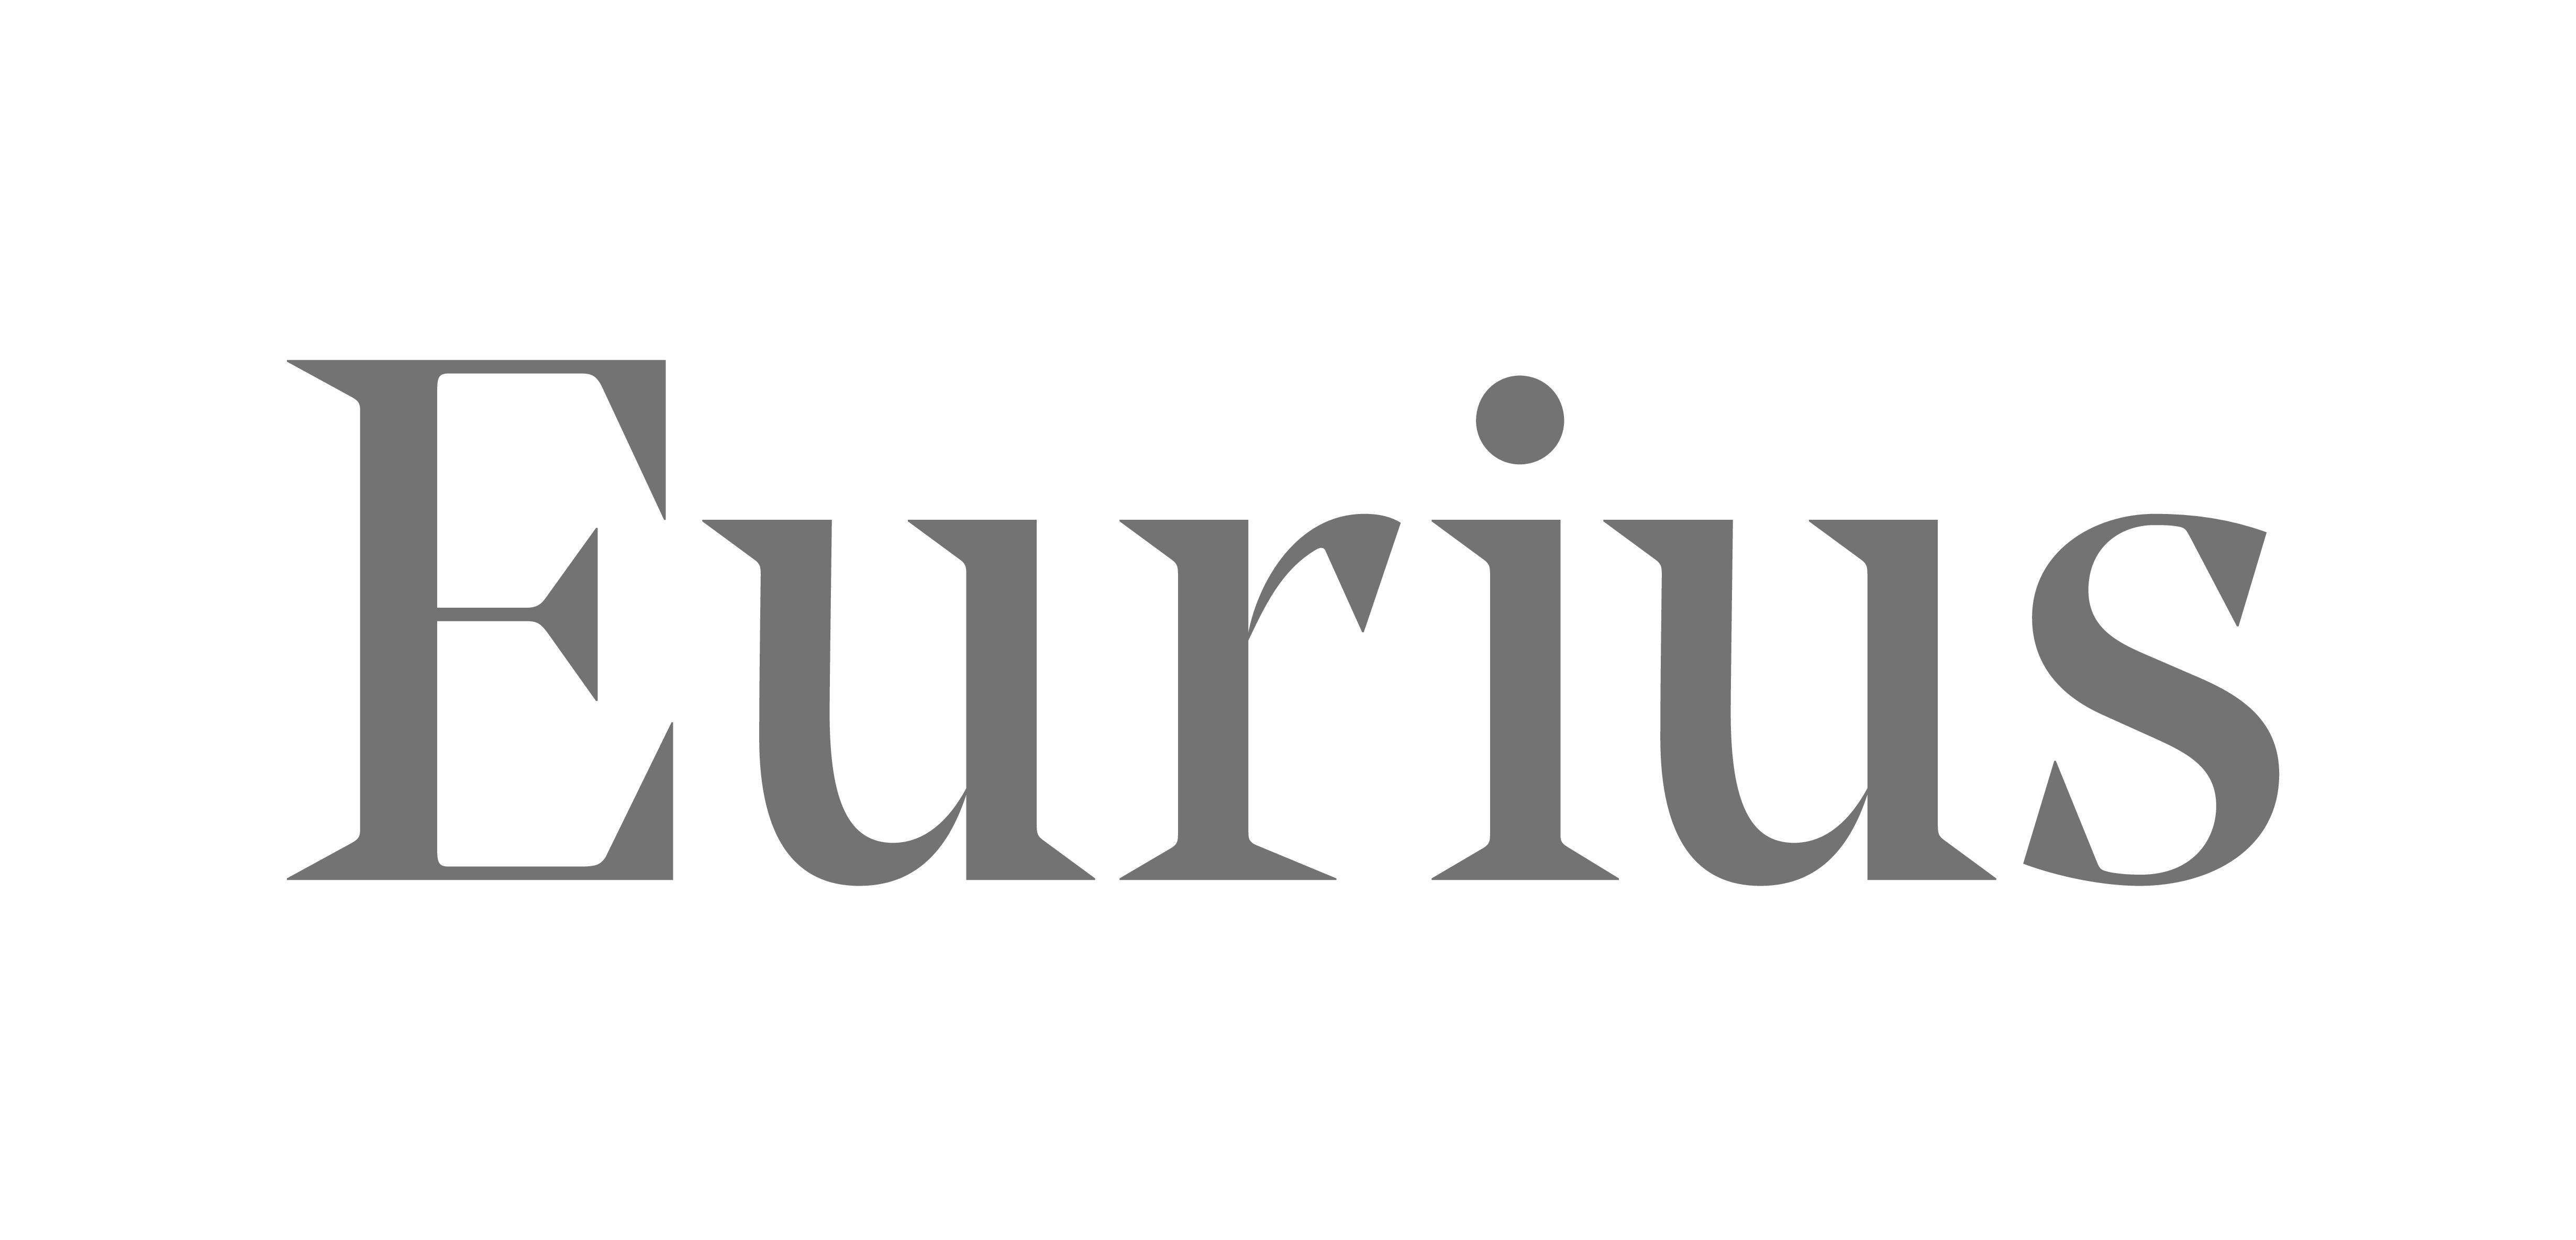 Eurius logo